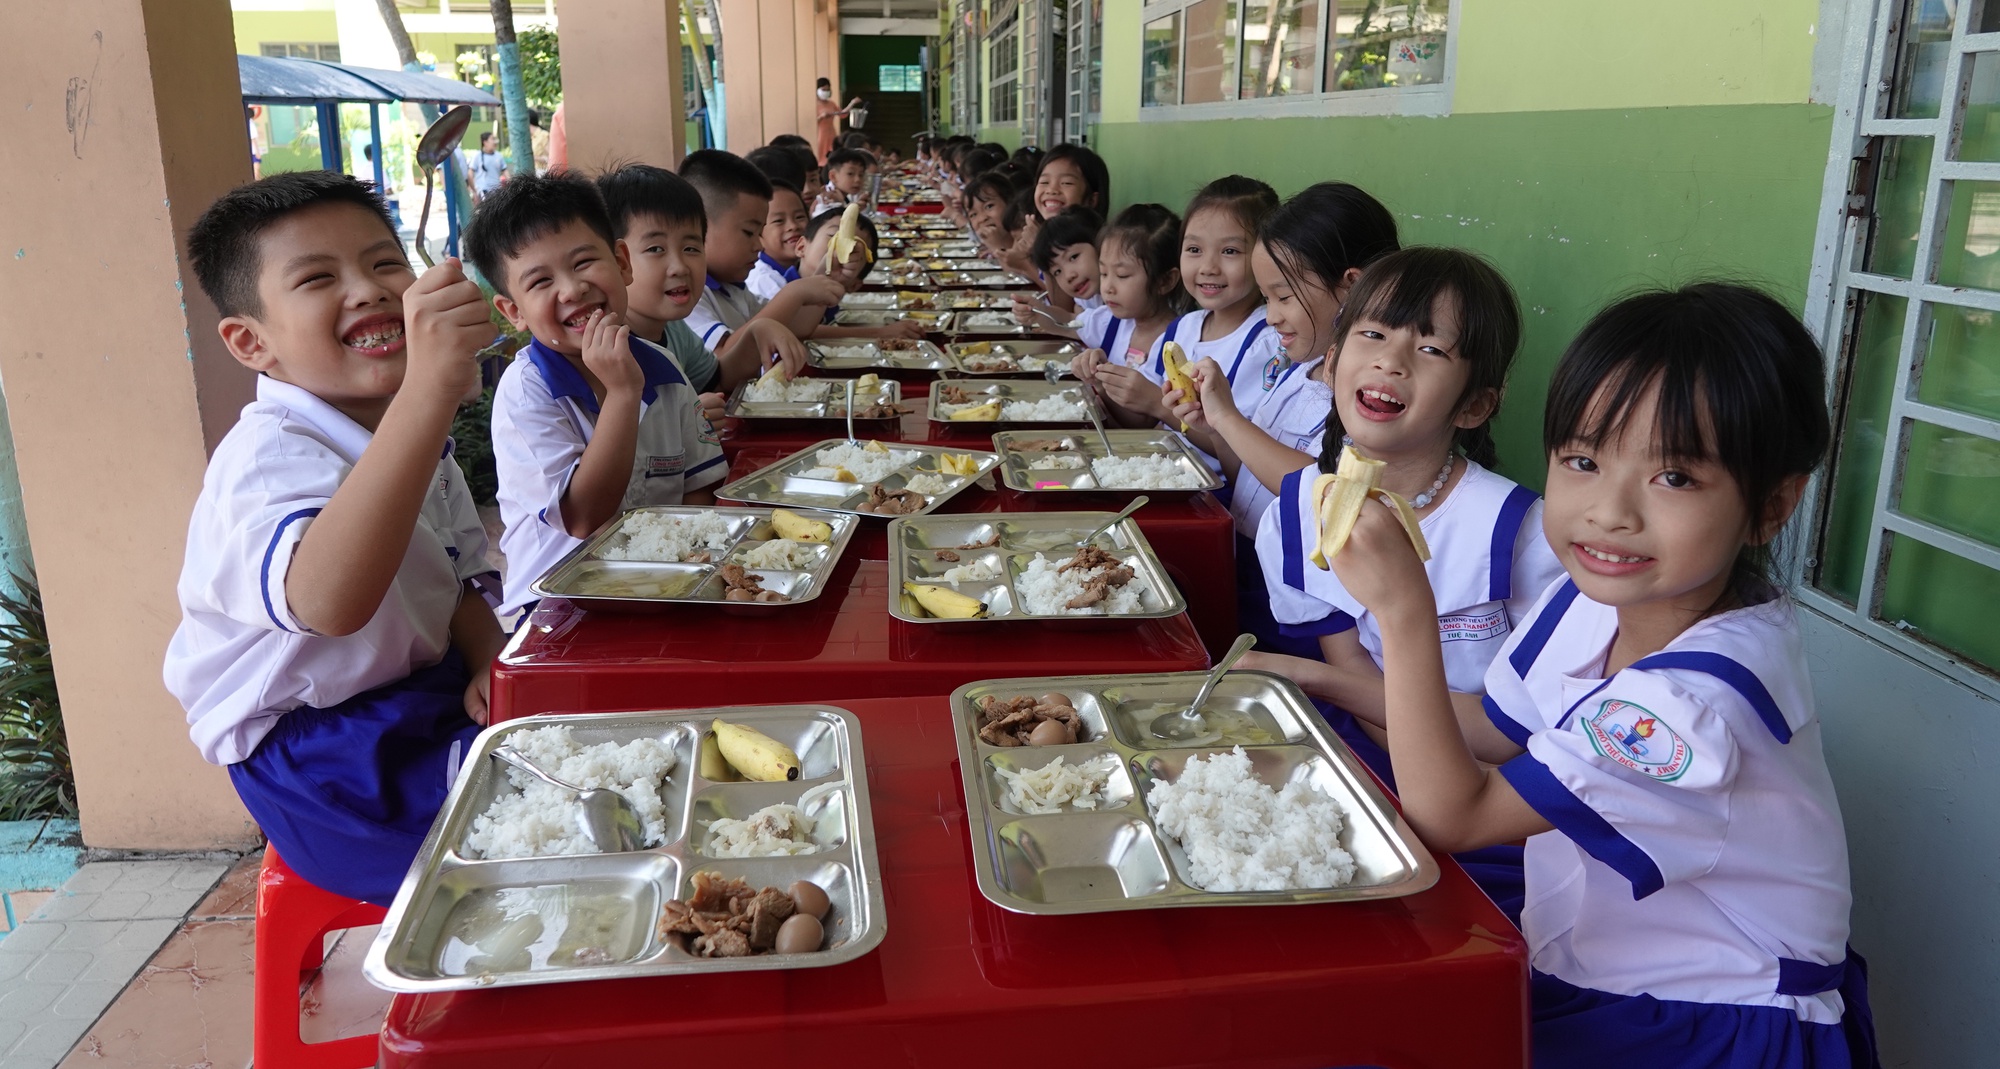 Trường học TP.HCM khuyến khích học sinh chấm điểm bữa ăn bán trú- Ảnh 1.